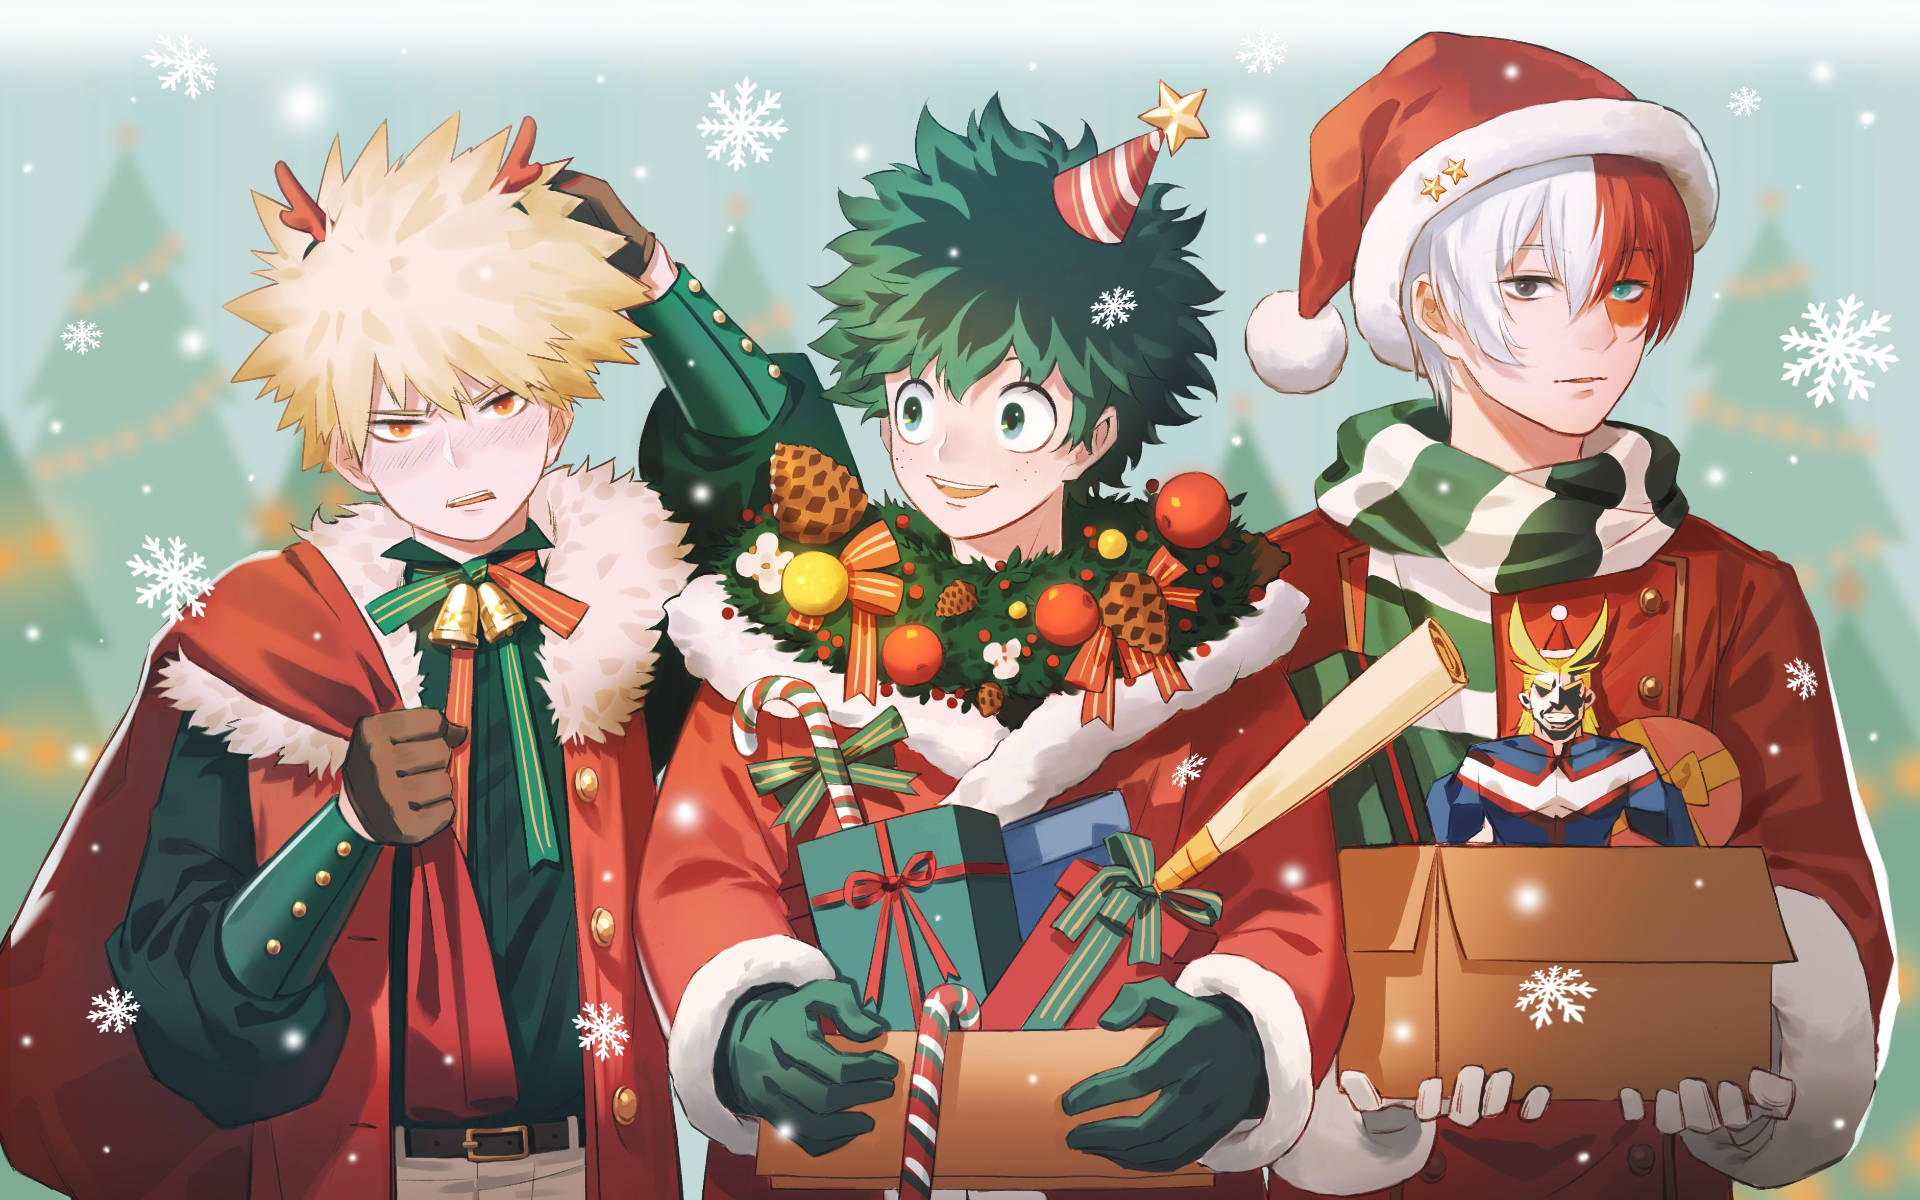 Download Anime Christmas My Hero Academia Boys Wallpaper | Wallpapers.com